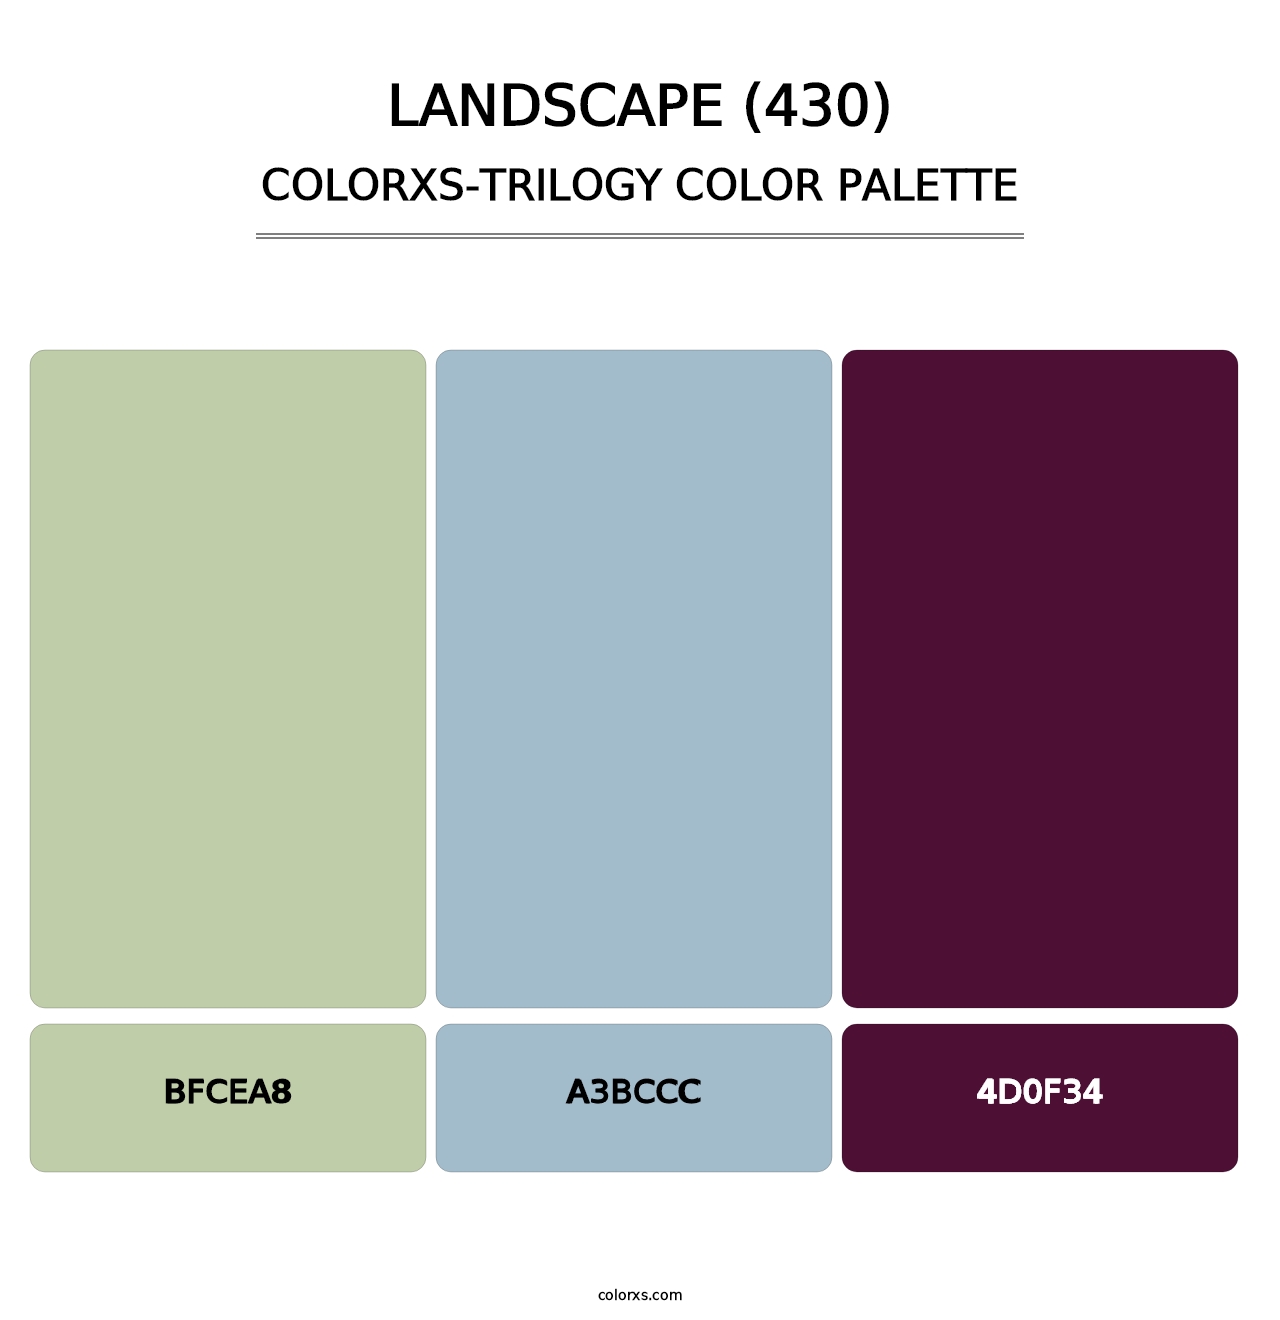 Landscape (430) - Colorxs Trilogy Palette